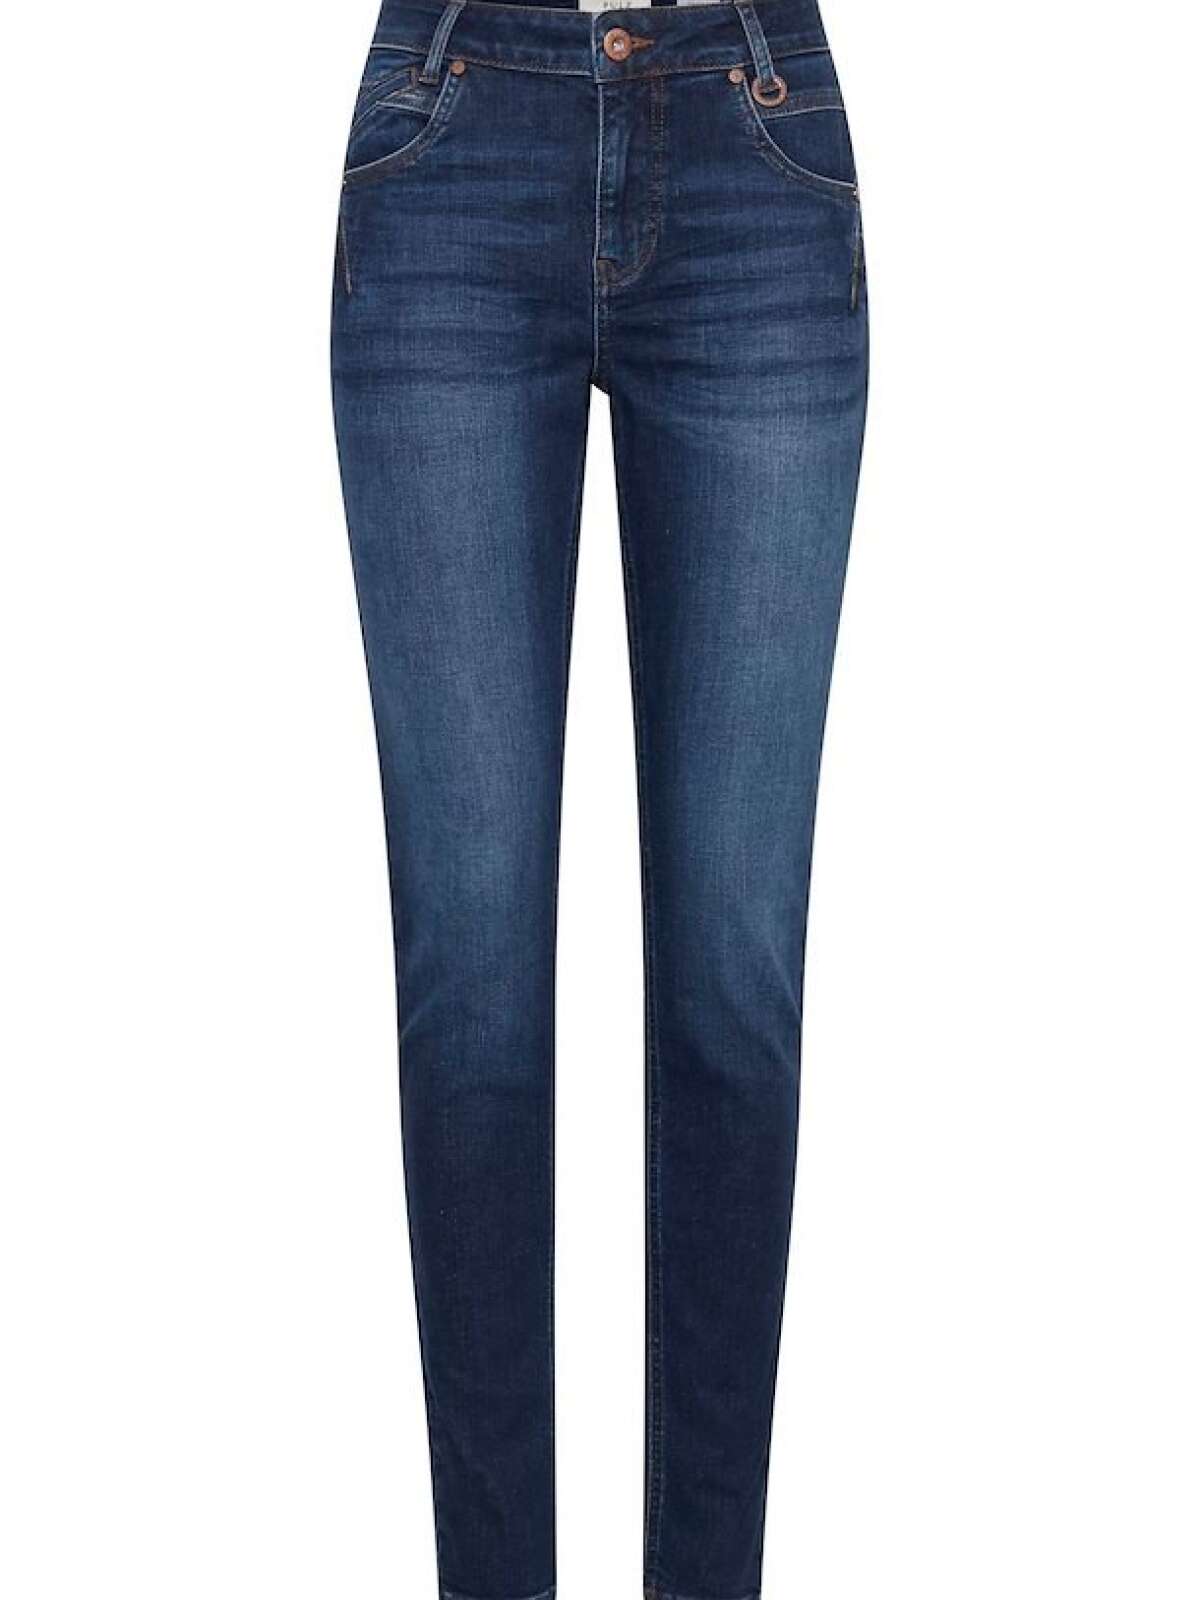 tweet Cafe forslag Emma jeans | Pulz jeans | Shop her >>